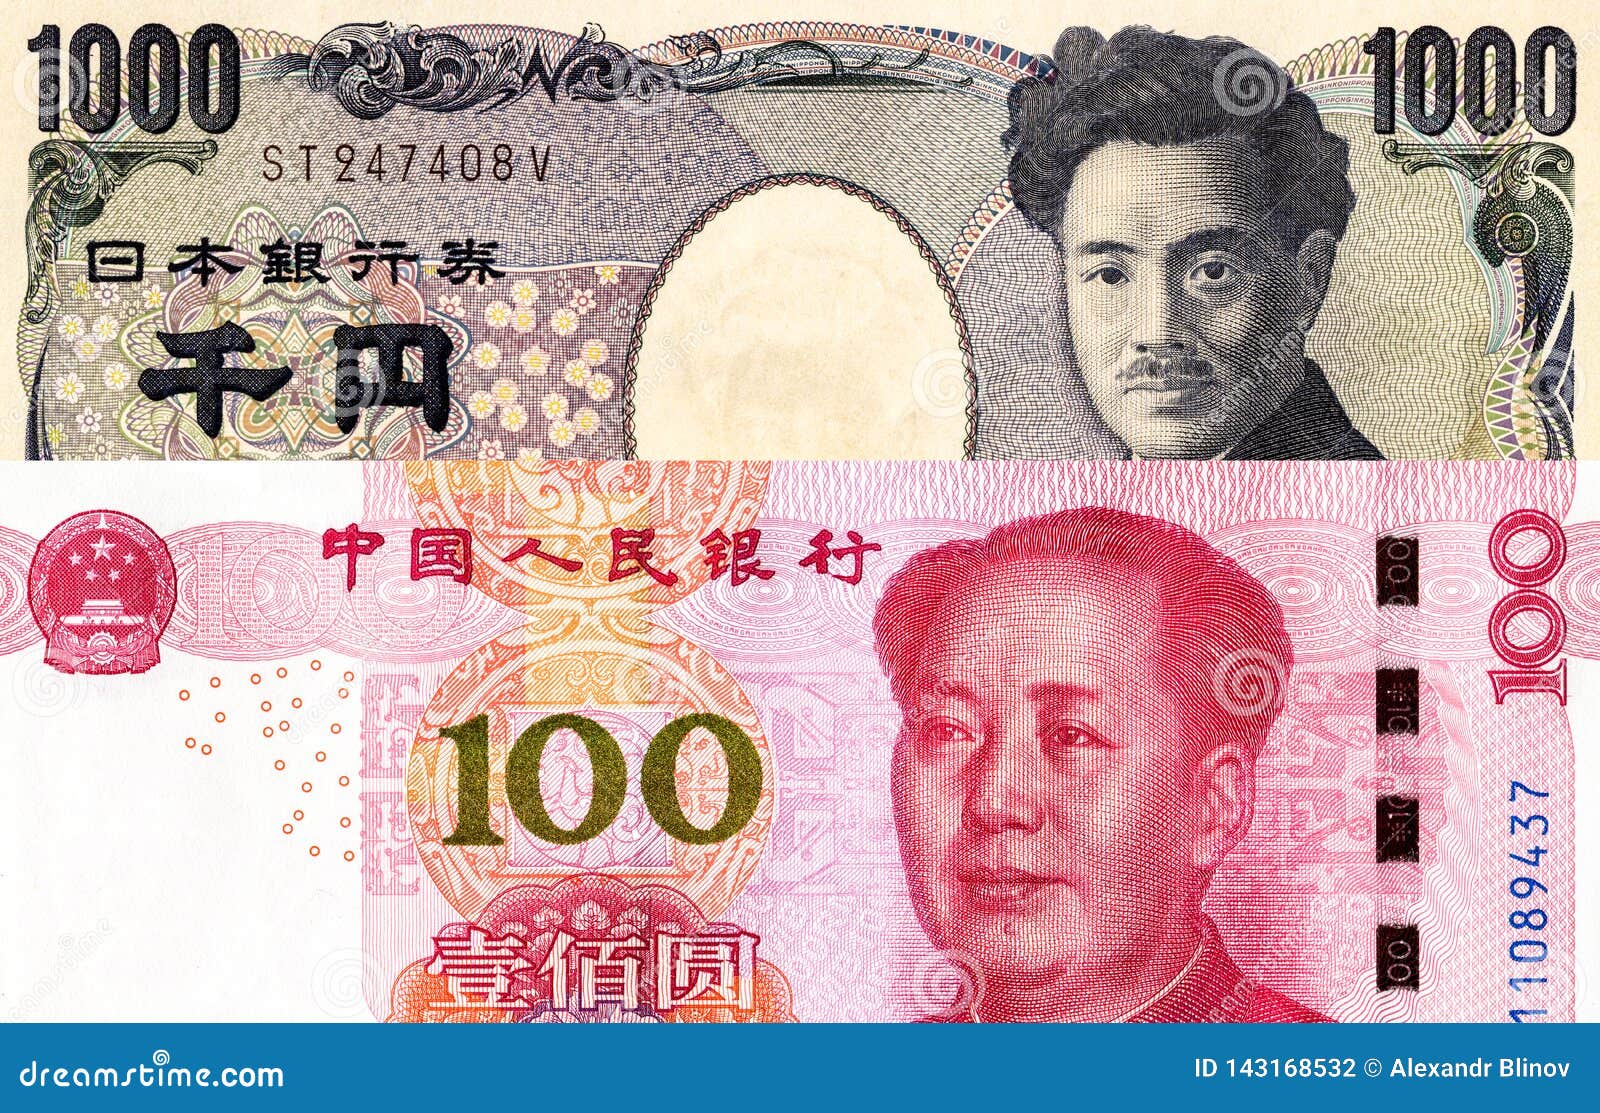 200 тысяч юаней. Японская валюта. Как выглядит китайский юань. Юань (валюта). Официальная валюта китайцев юань.